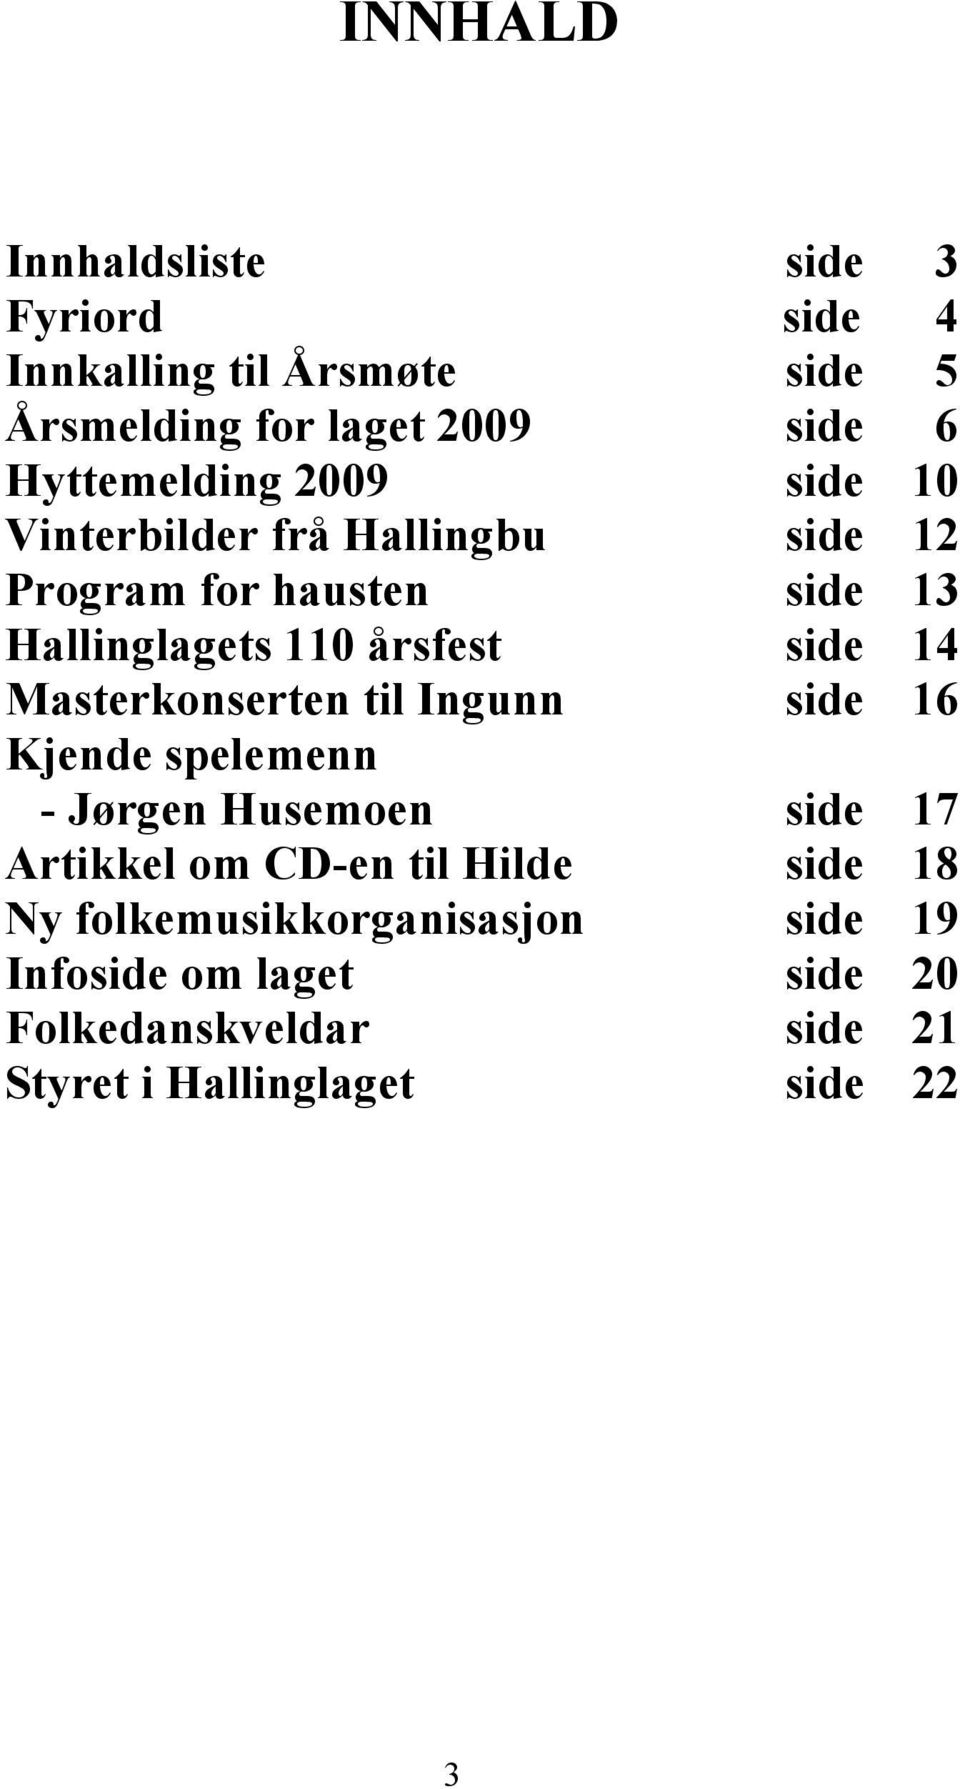 side 14 Masterkonserten til Ingunn side 16 Kjende spelemenn - Jørgen Husemoen side 17 Artikkel om CD-en til Hilde